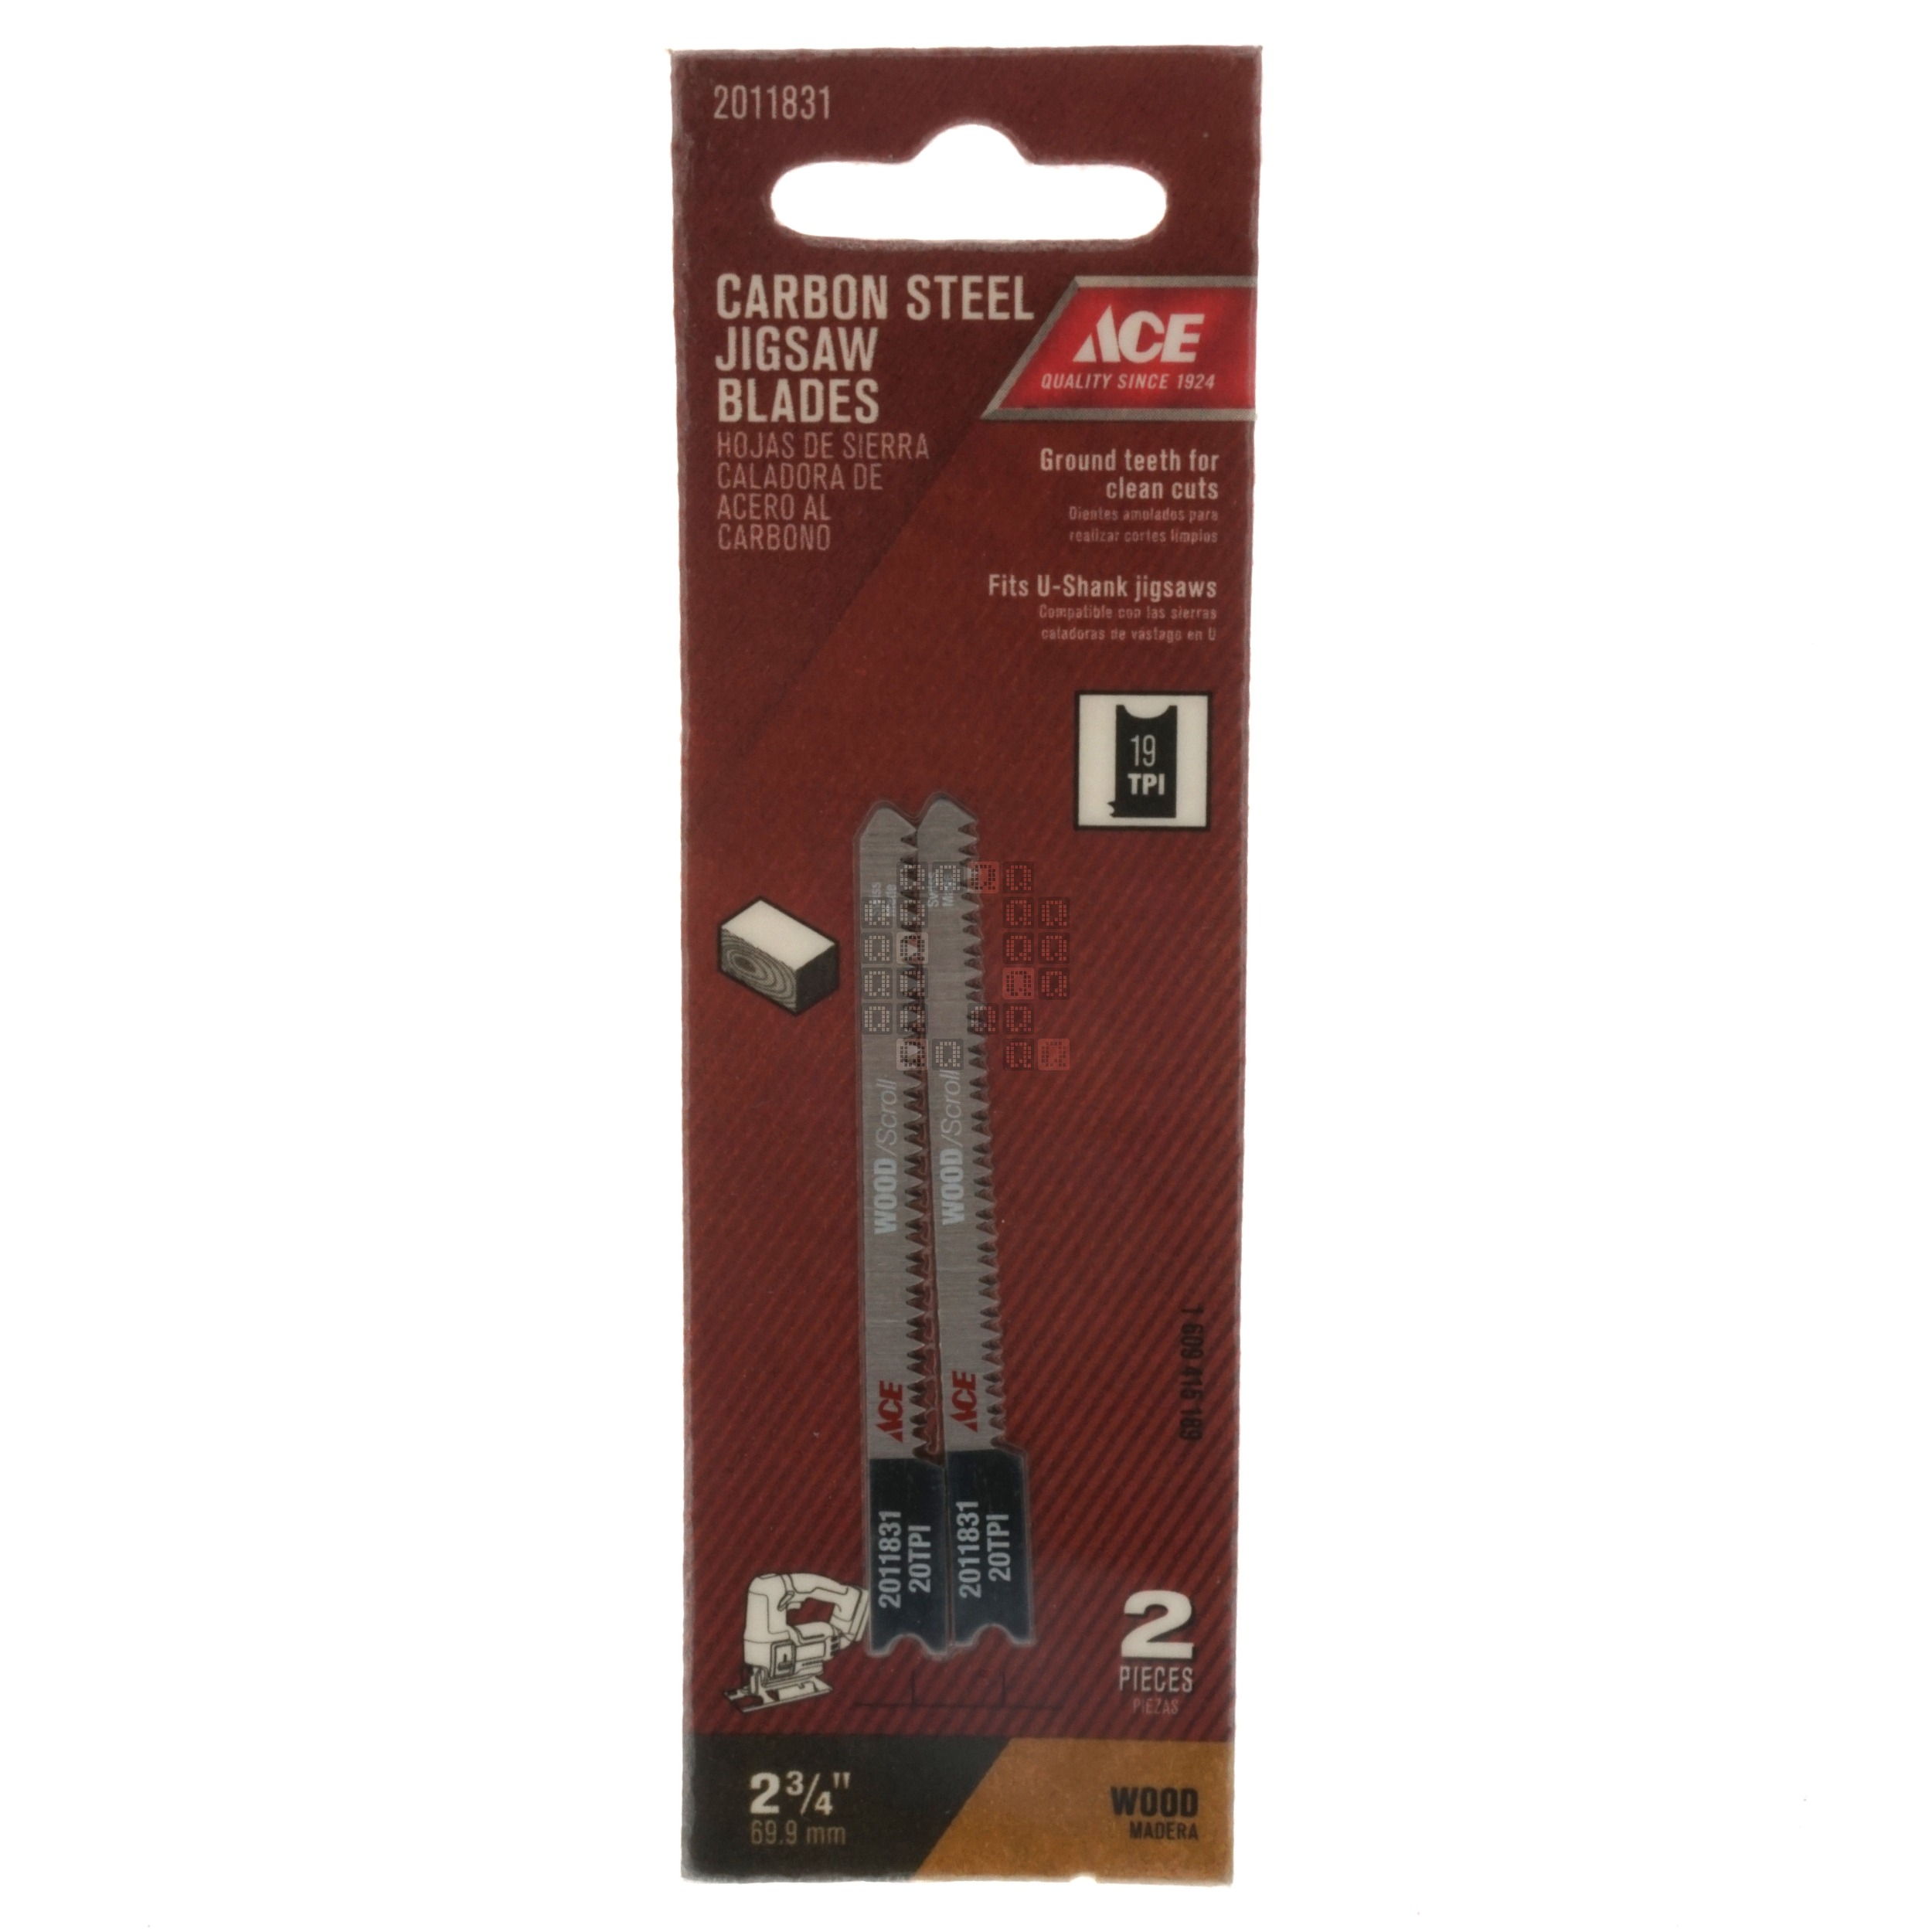 ACE Hardware 2011831 Carbon Steel Jigsaw Blades, 19TPI 2-3/4" Length, 2-Pack, U-Shank